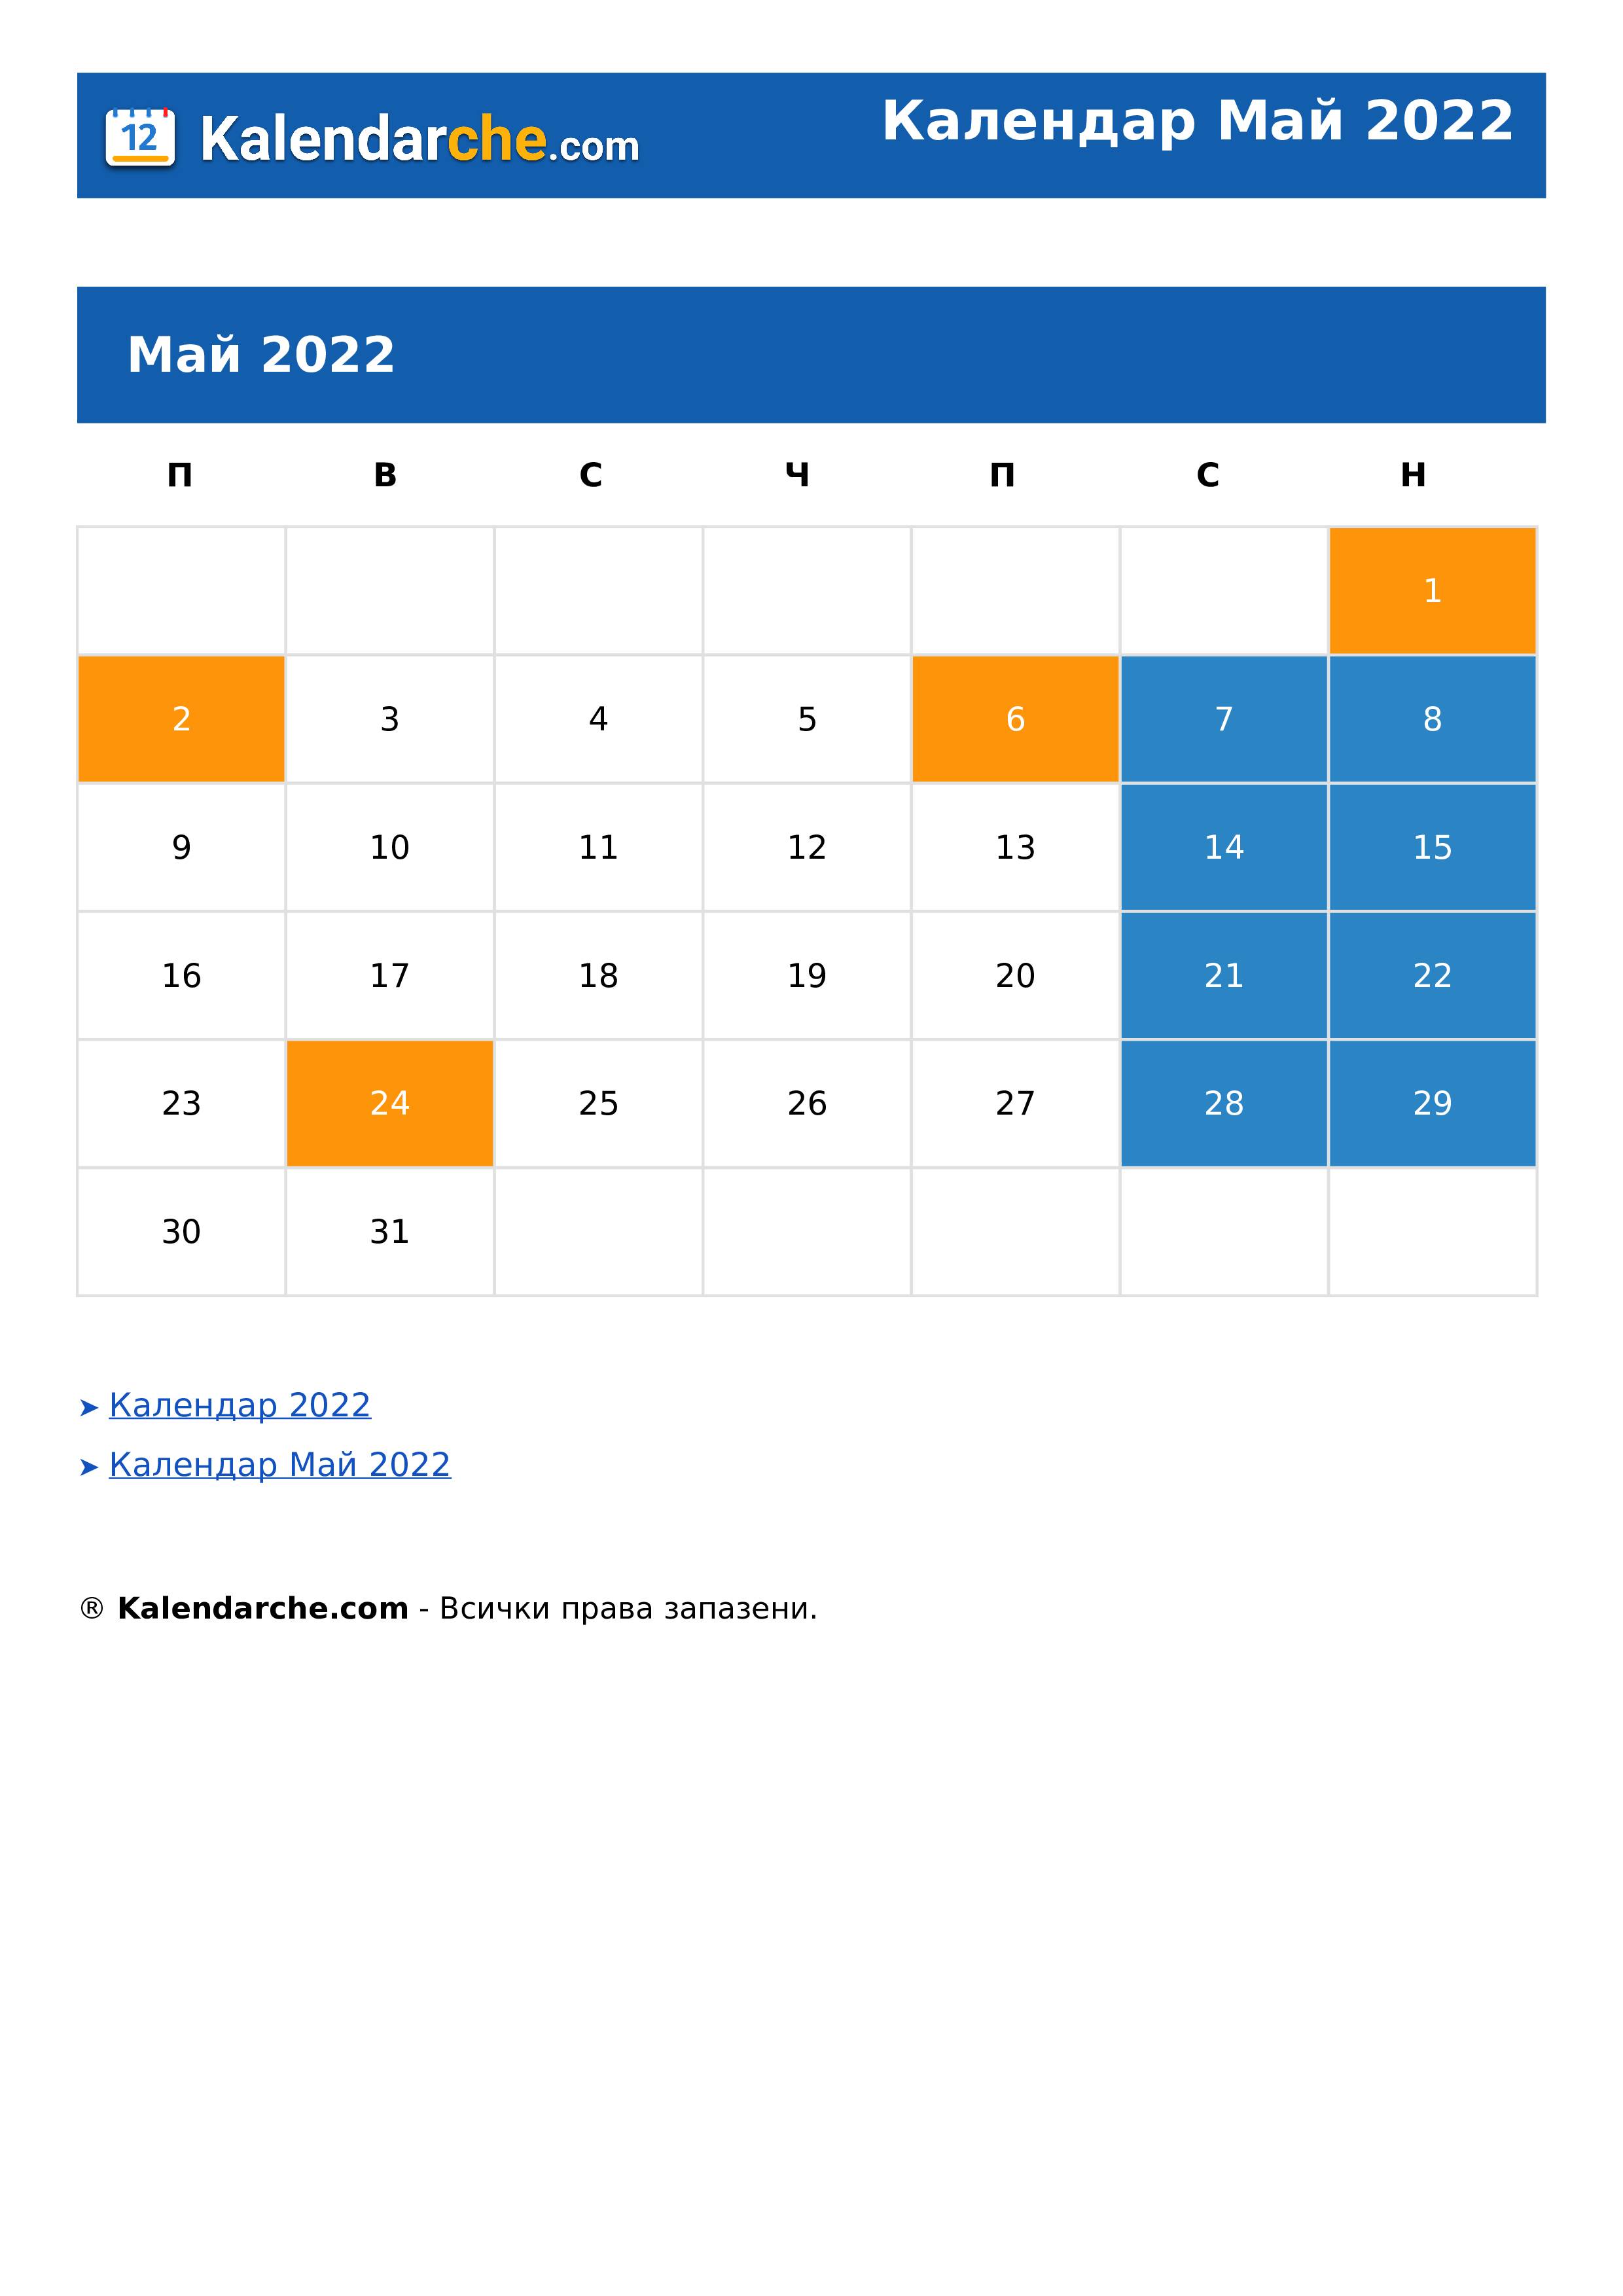 Календар Май 2022